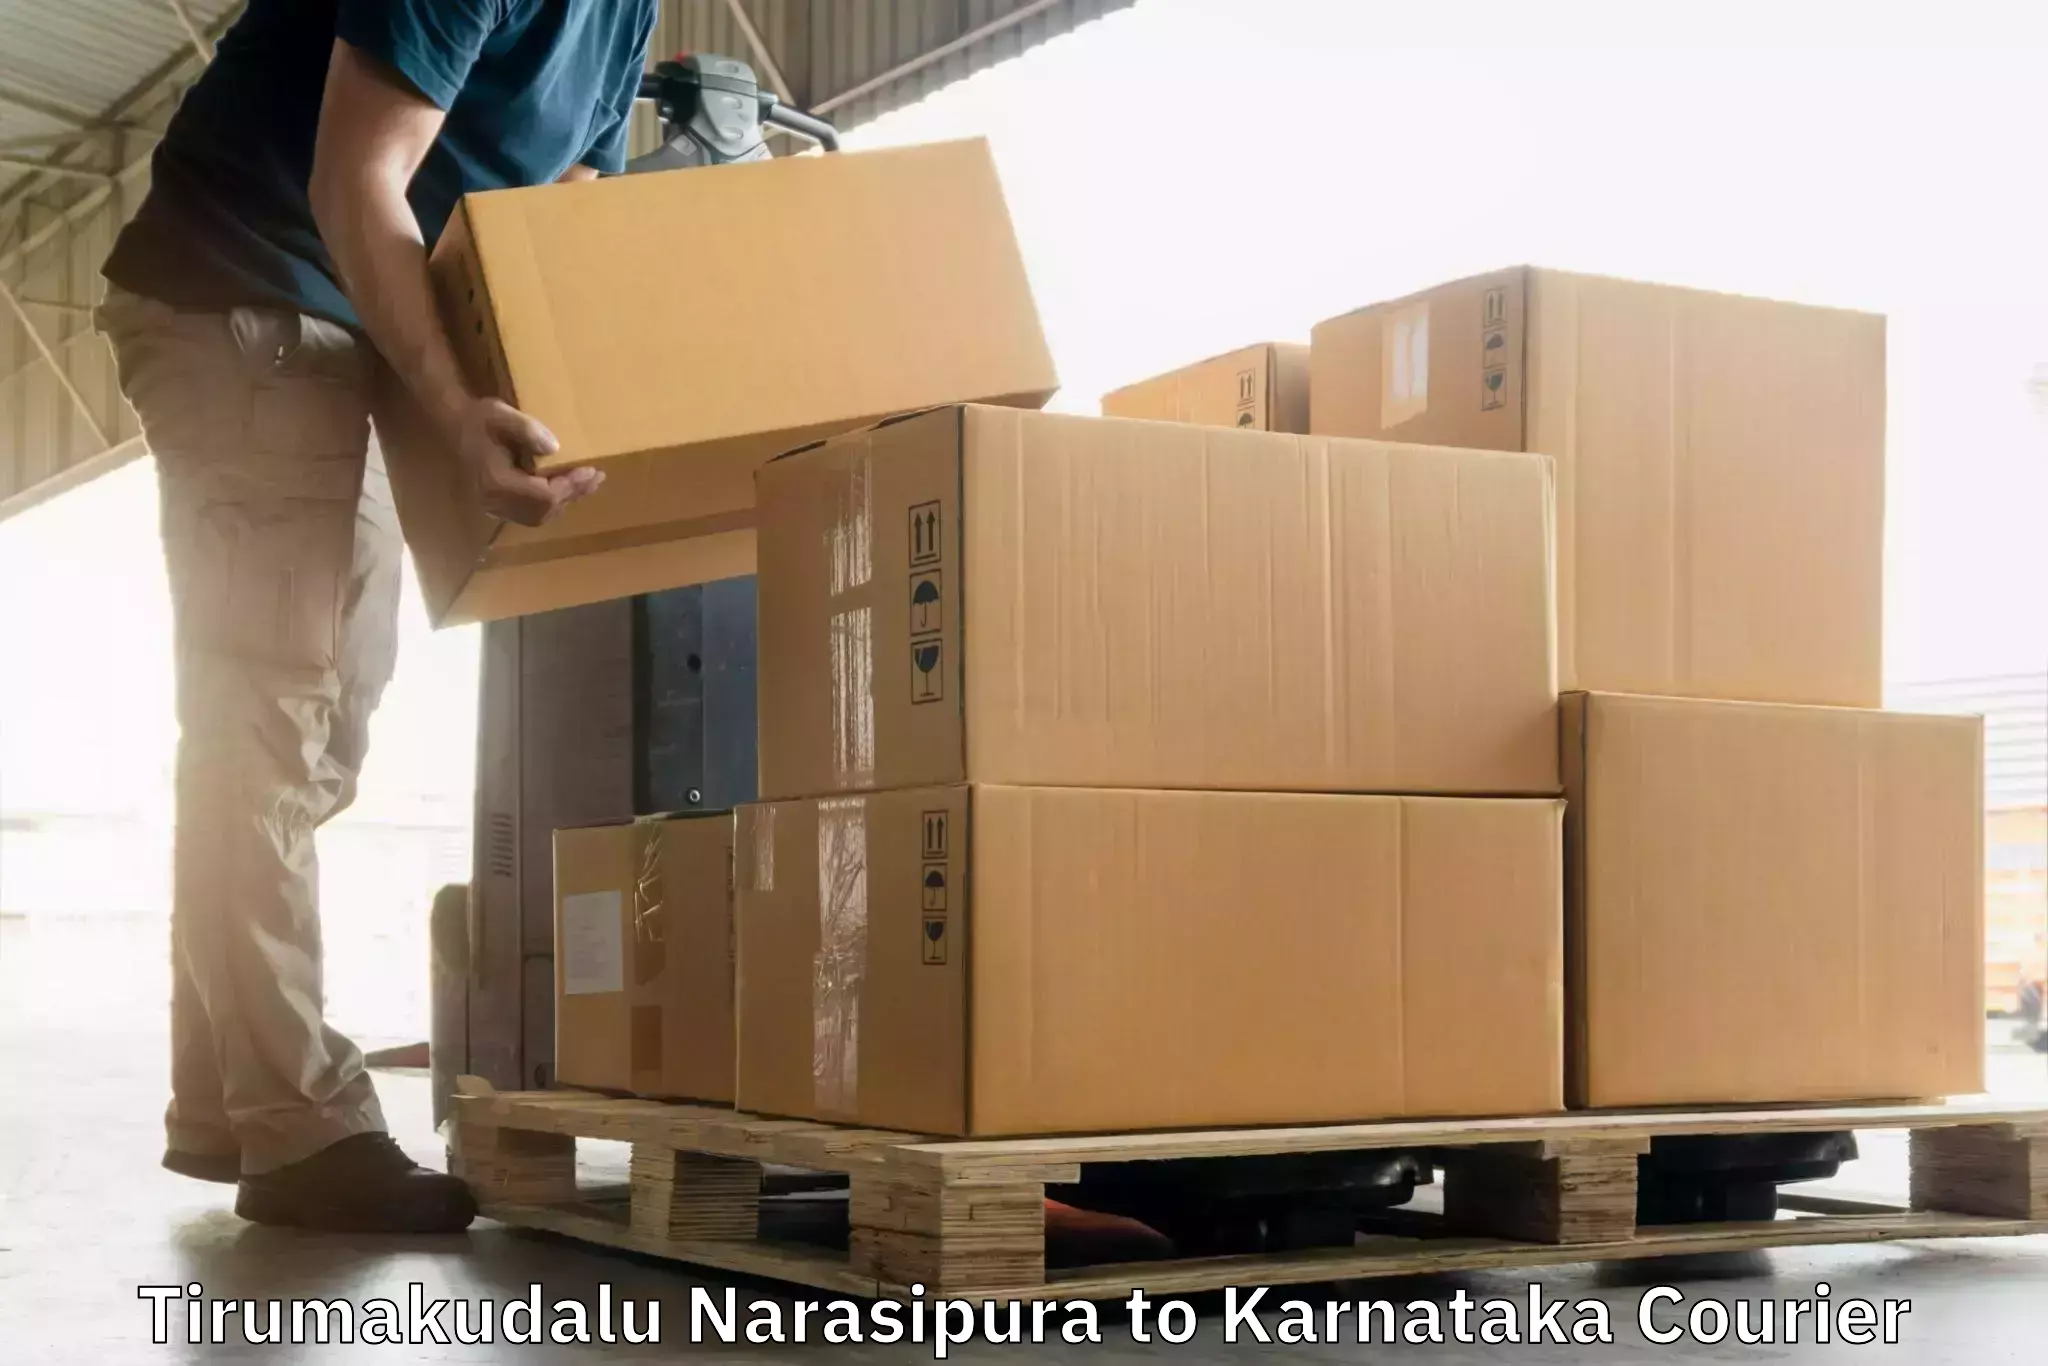 Custom courier packaging Tirumakudalu Narasipura to Karnataka